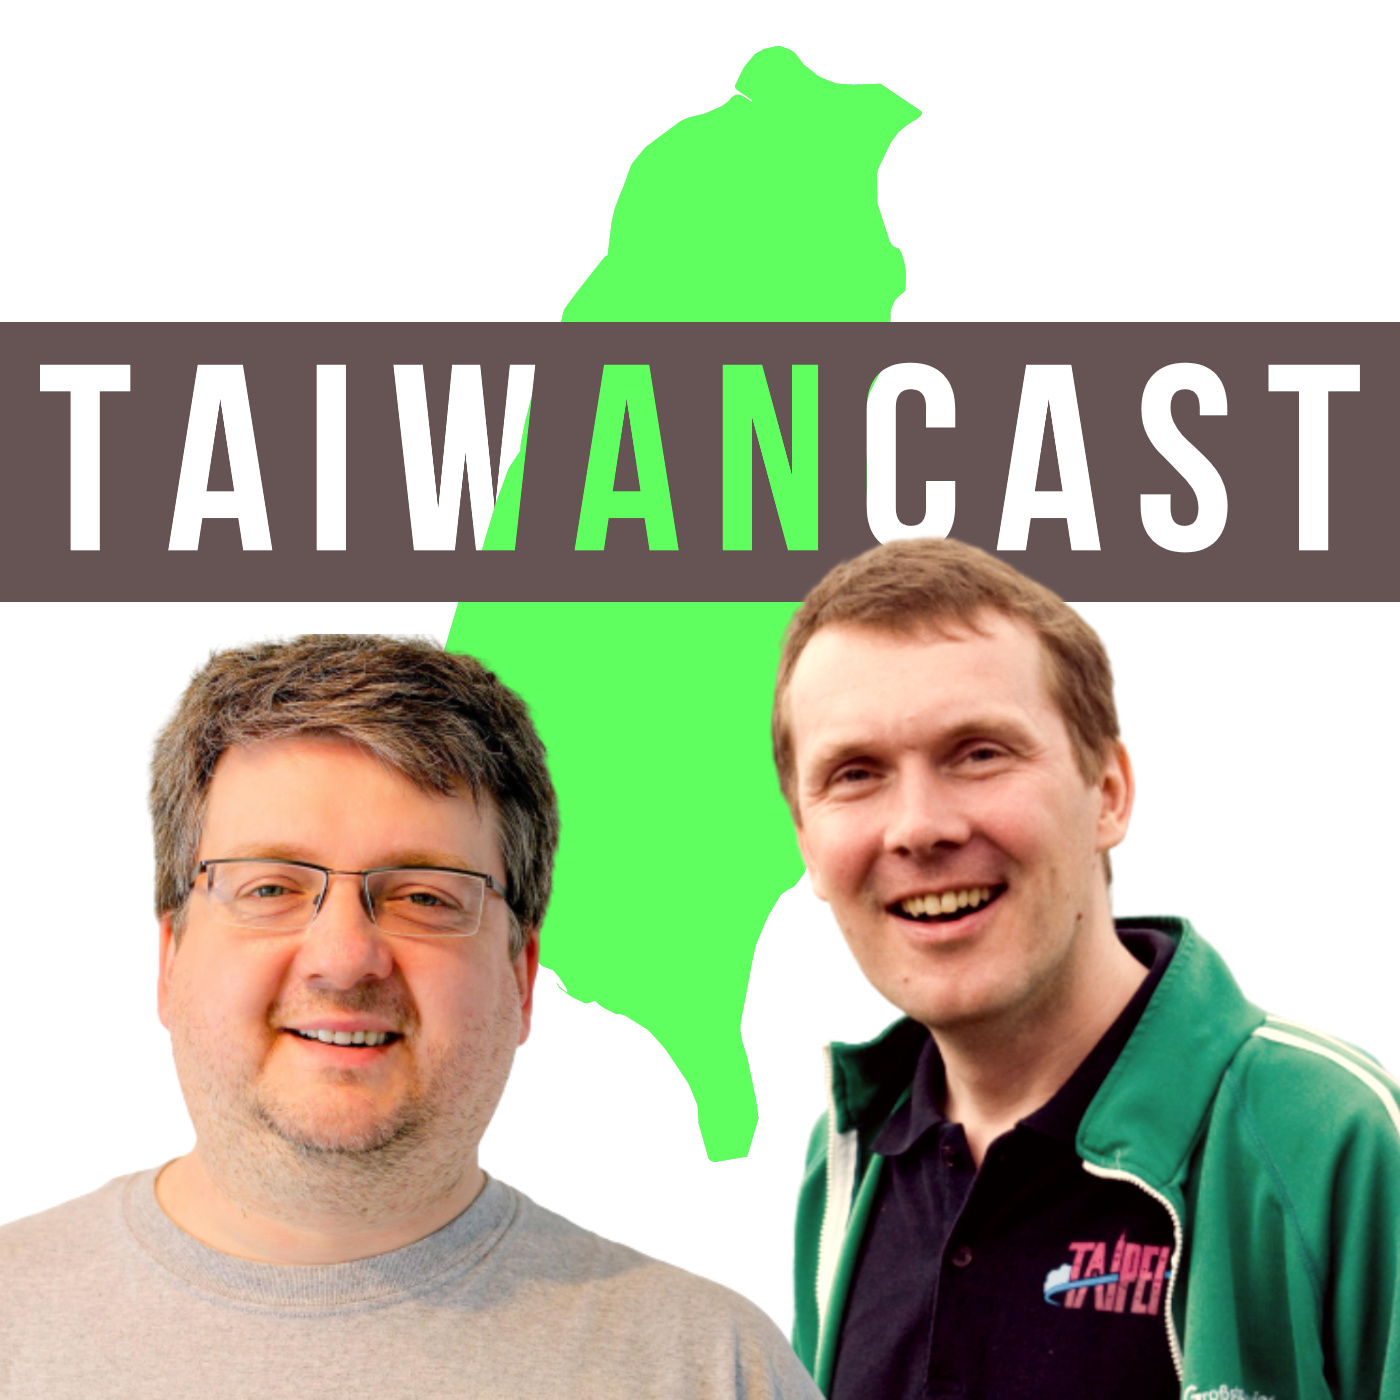 Taiwancast